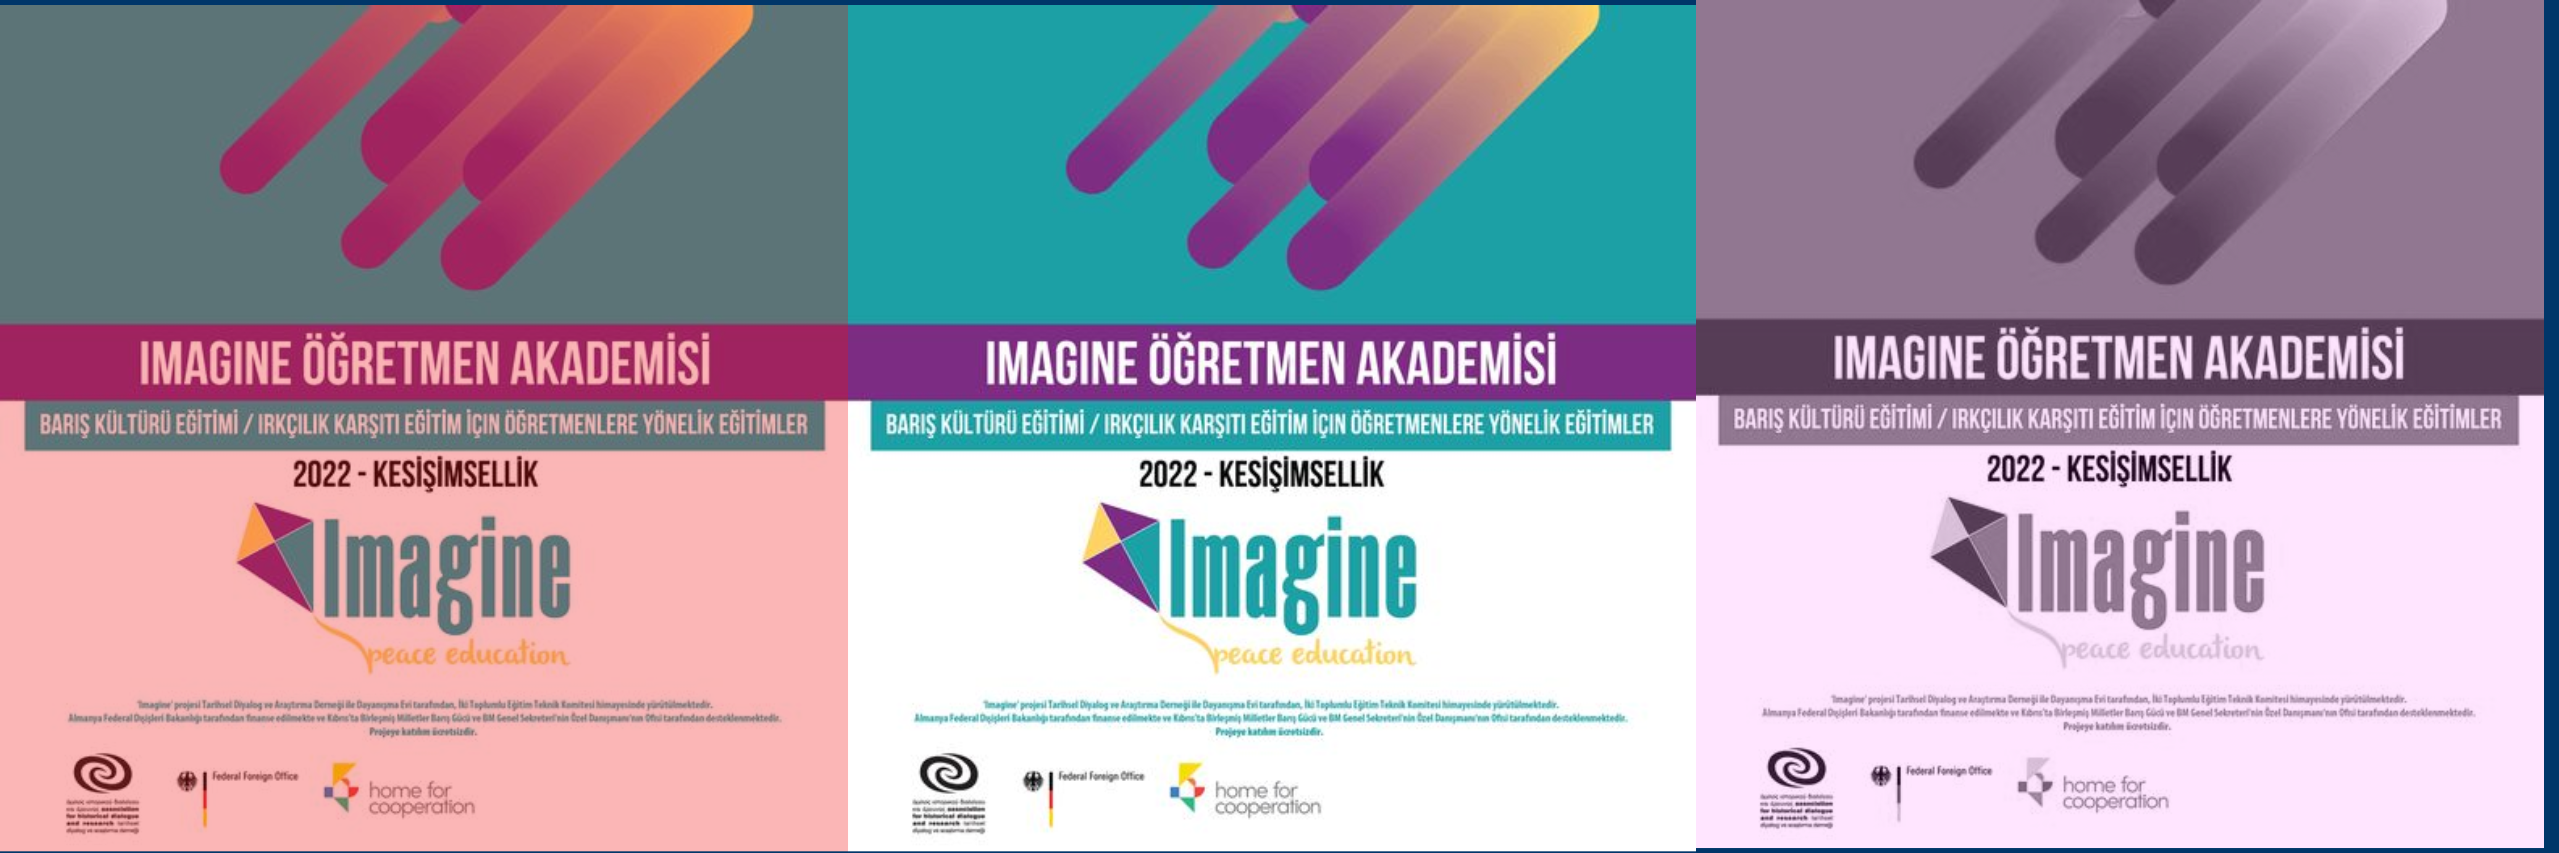 ‘Imagine’ projesi kapsamında, farklı bölgelerde öğretmenlere yönelik eğitimler gerçekleştirilecektir.